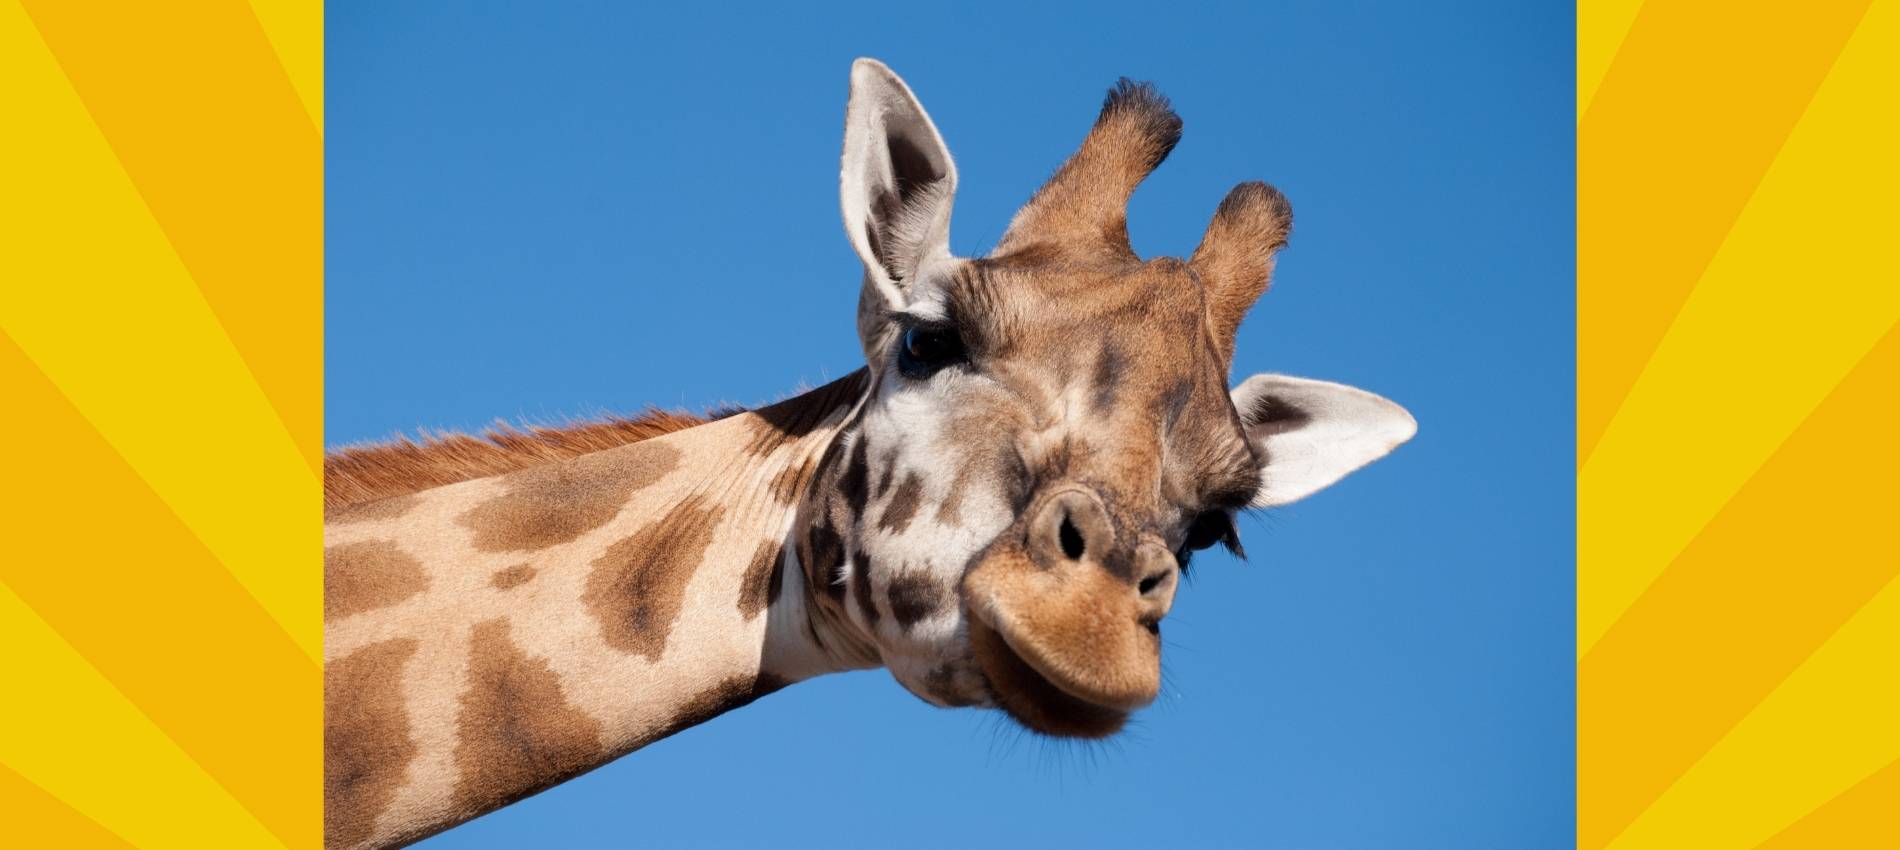 Giraffe vor blauem Himmel - Symbolbild für Tierschutz im Ukraine Krieg